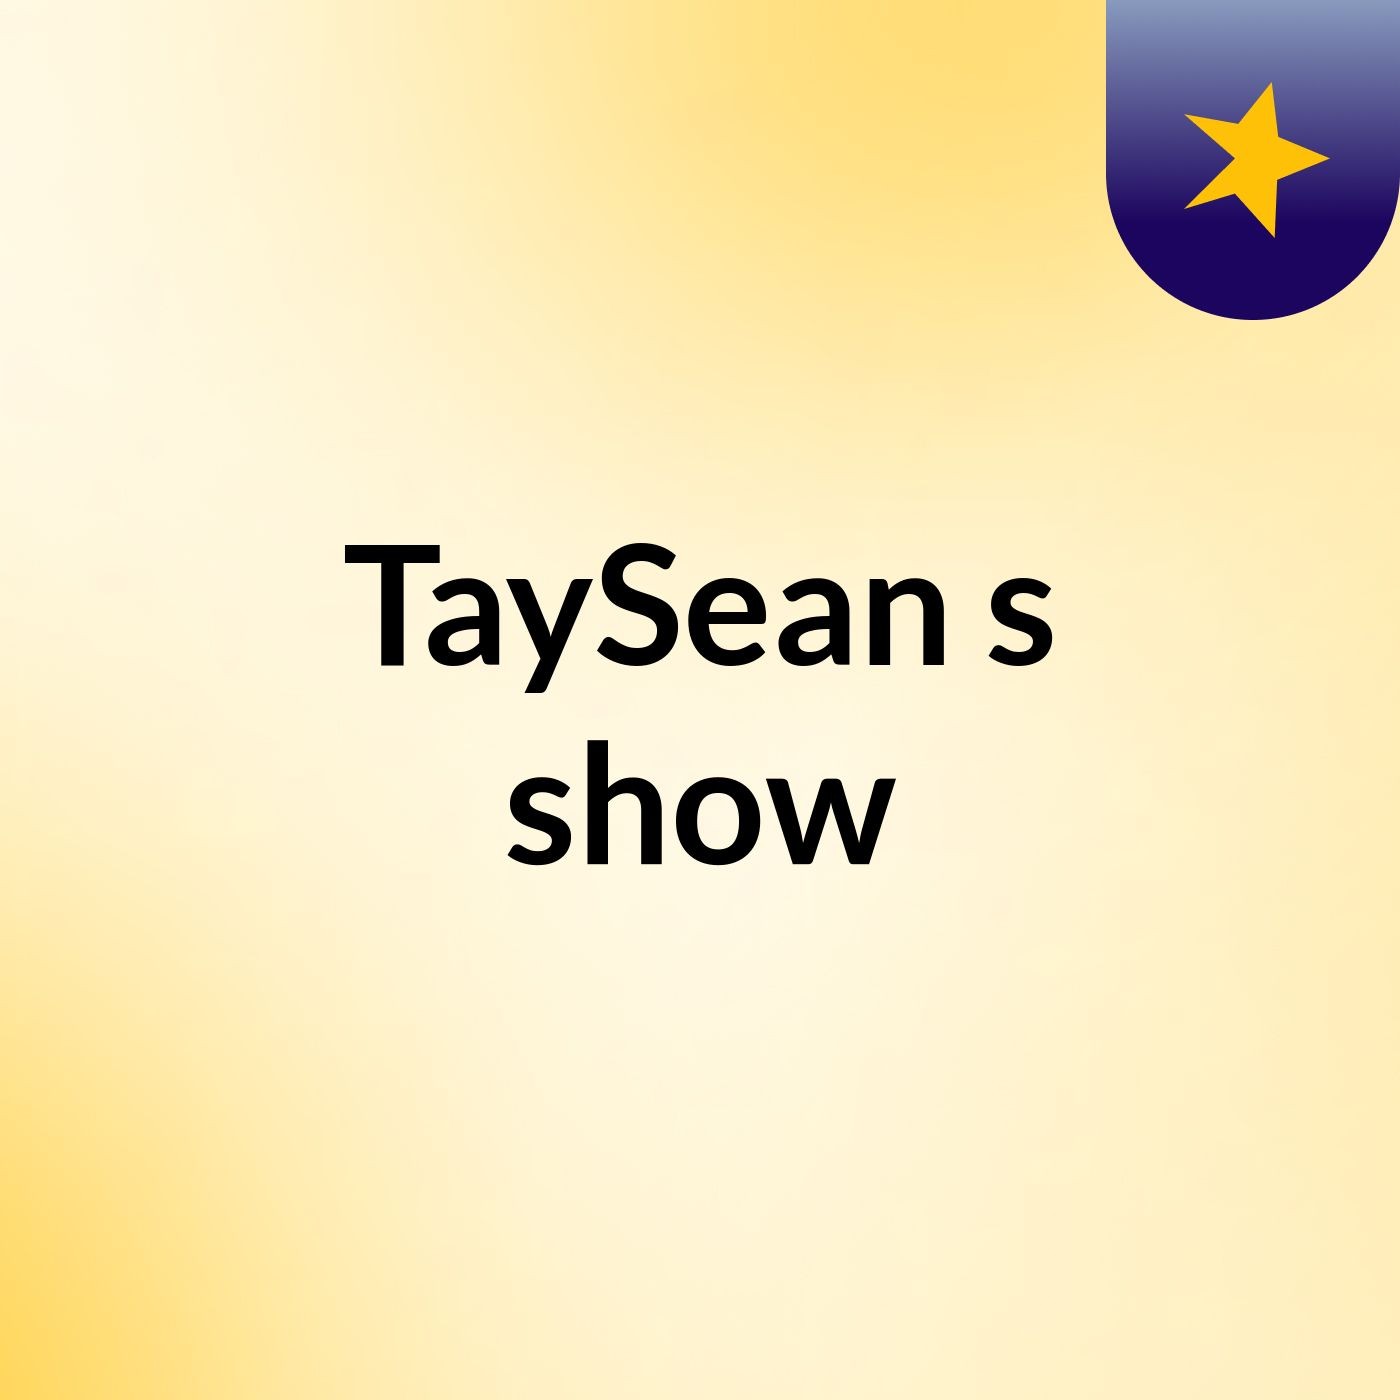 TaySean's show